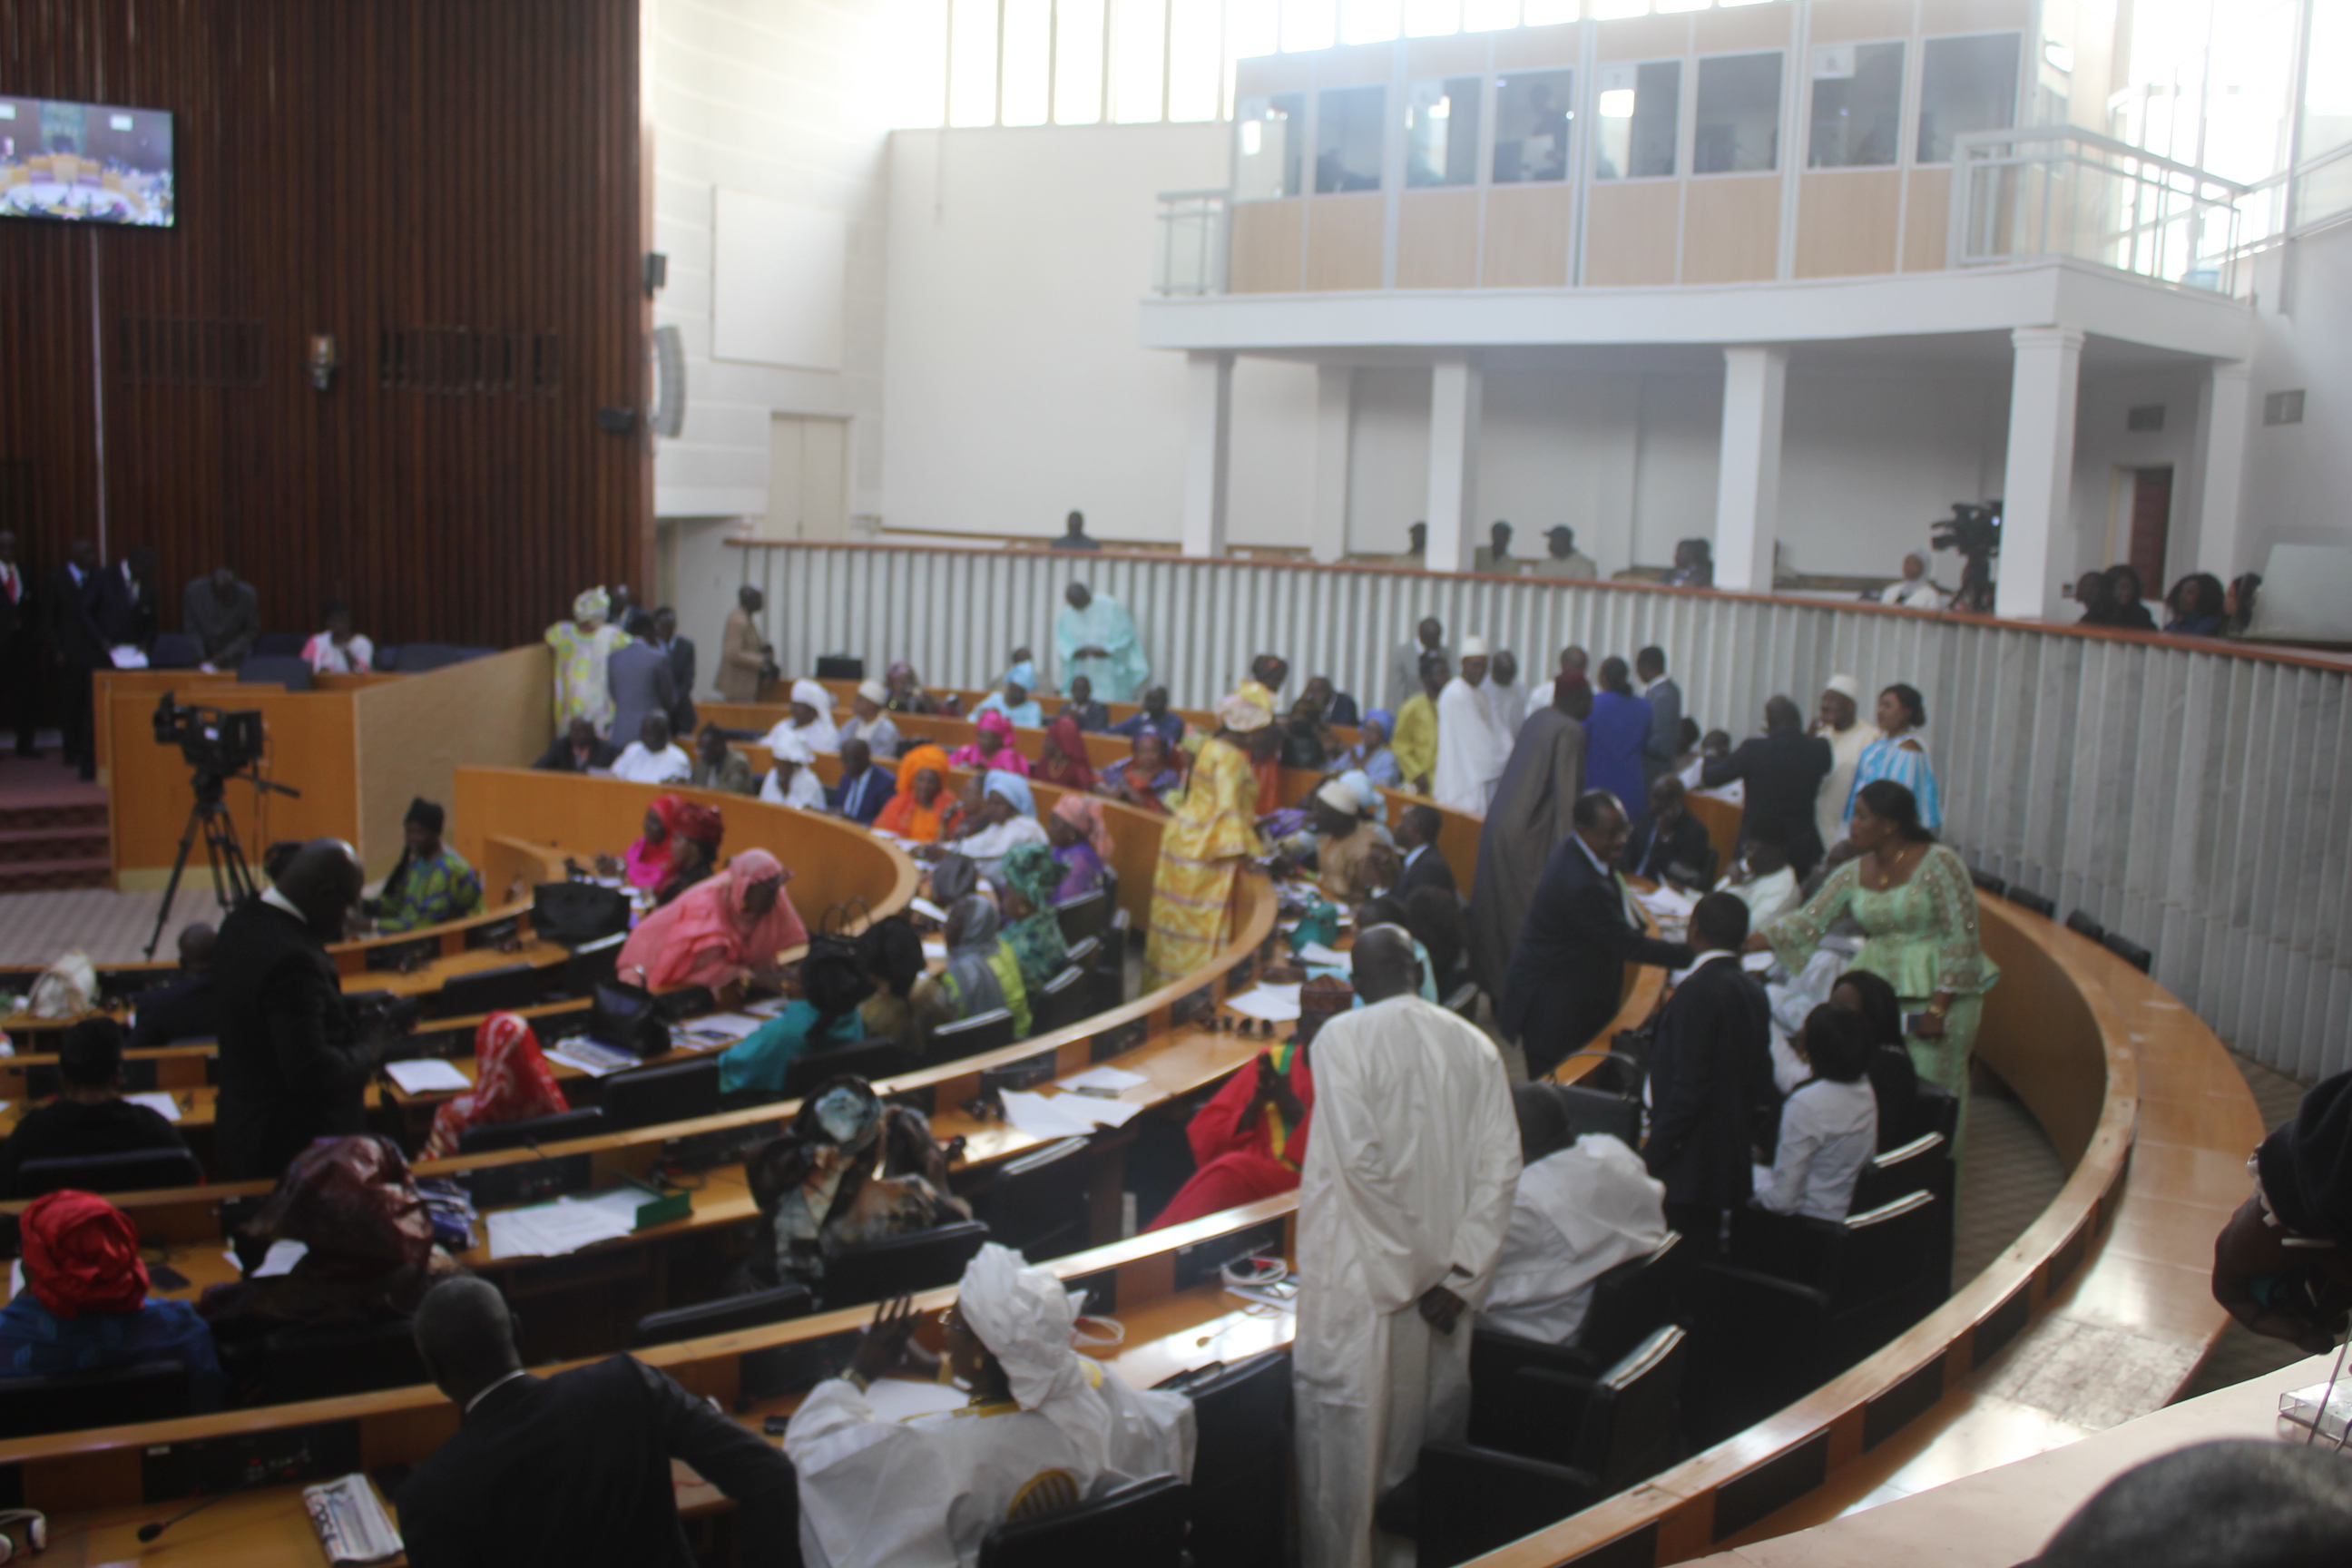 Direct Assemblée Nationale: l'opposition perturbe la salle